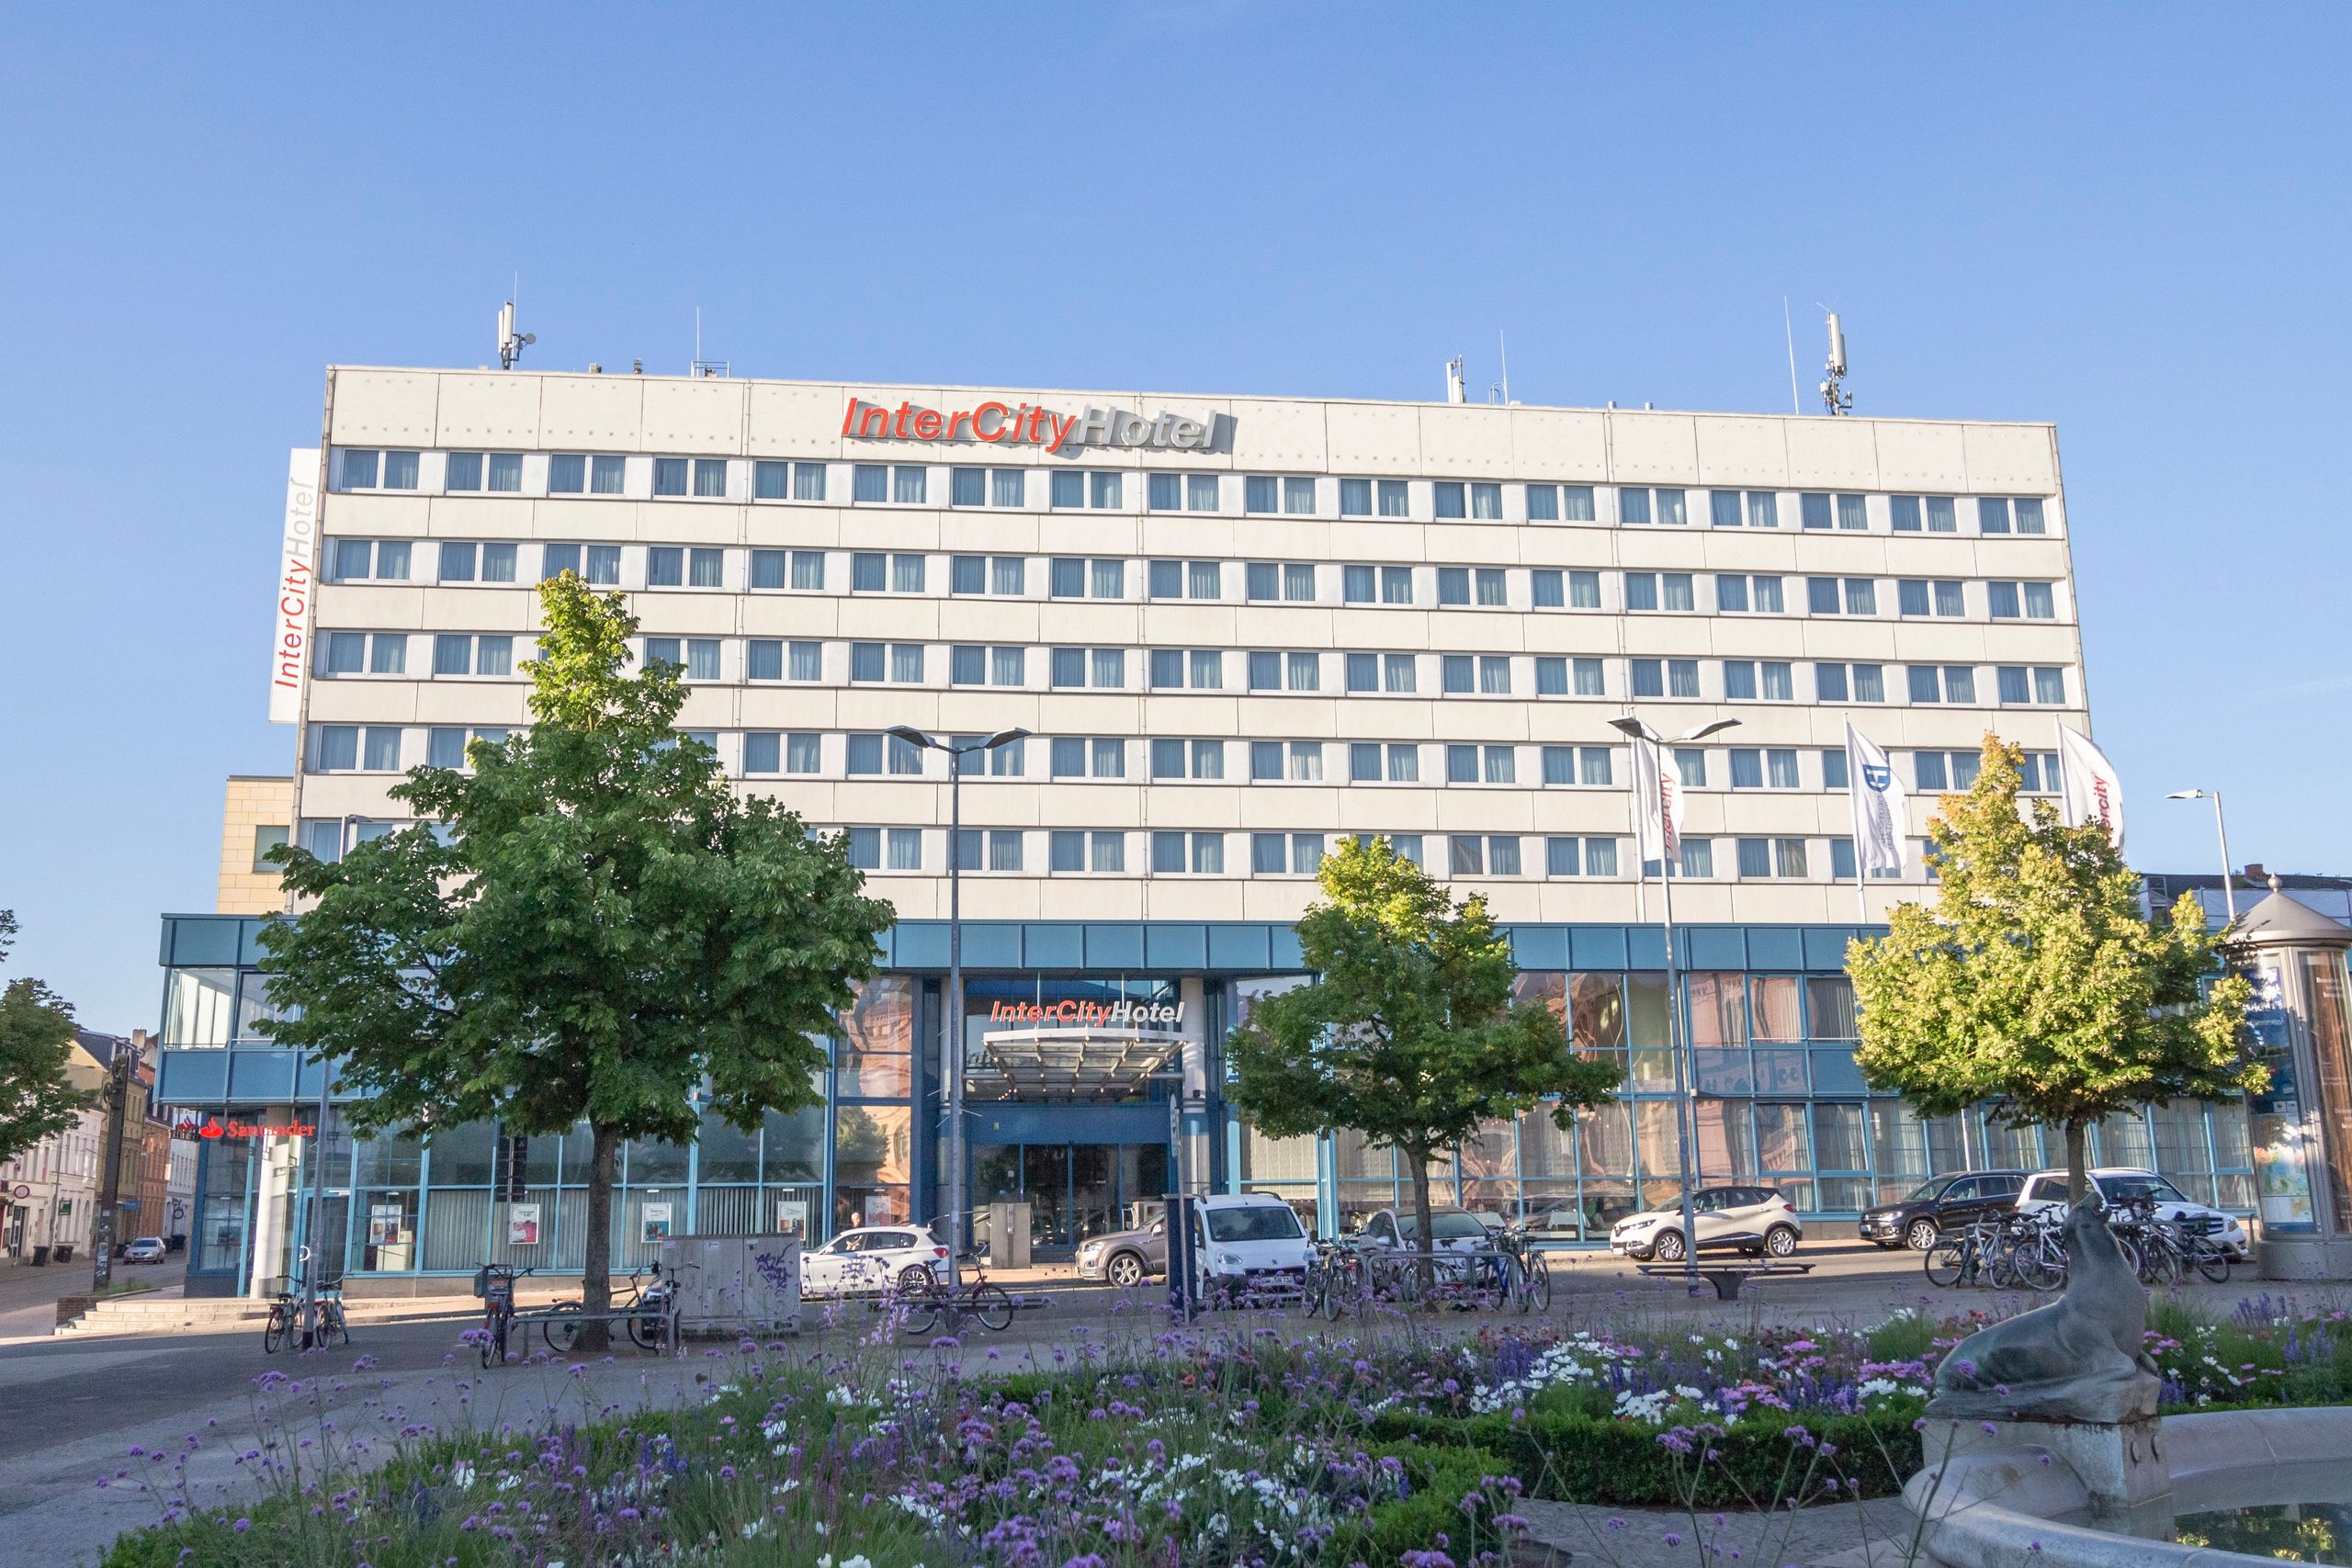 Hotel in Schwerin - IntercityHotel Schwerin, exterior view